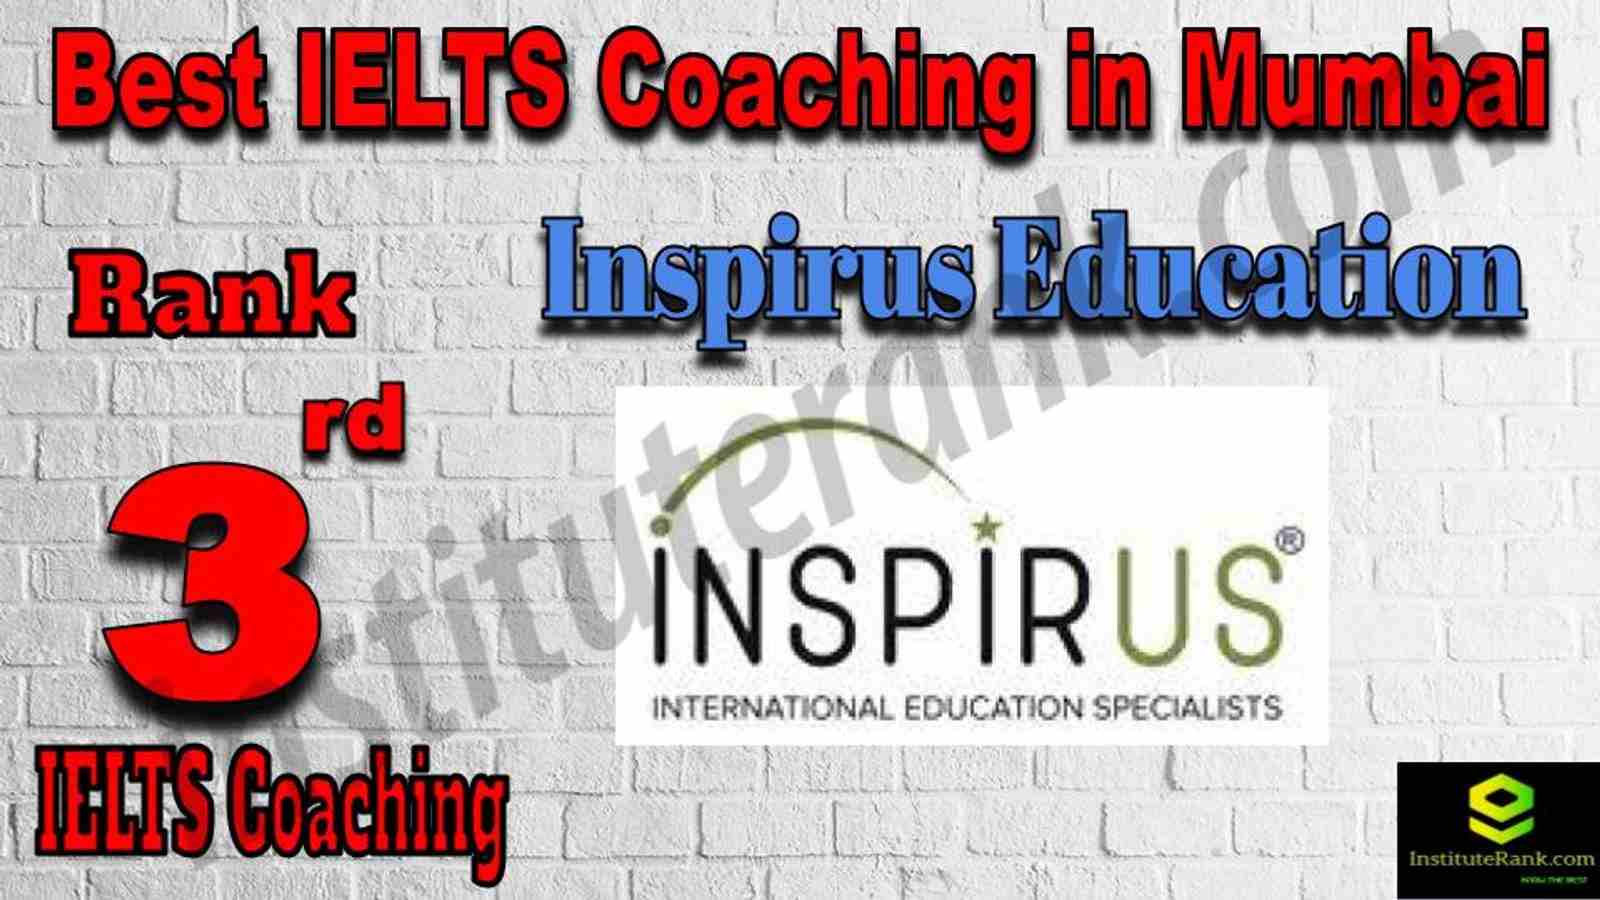 3rd Best IELTS Coaching in Mumbai